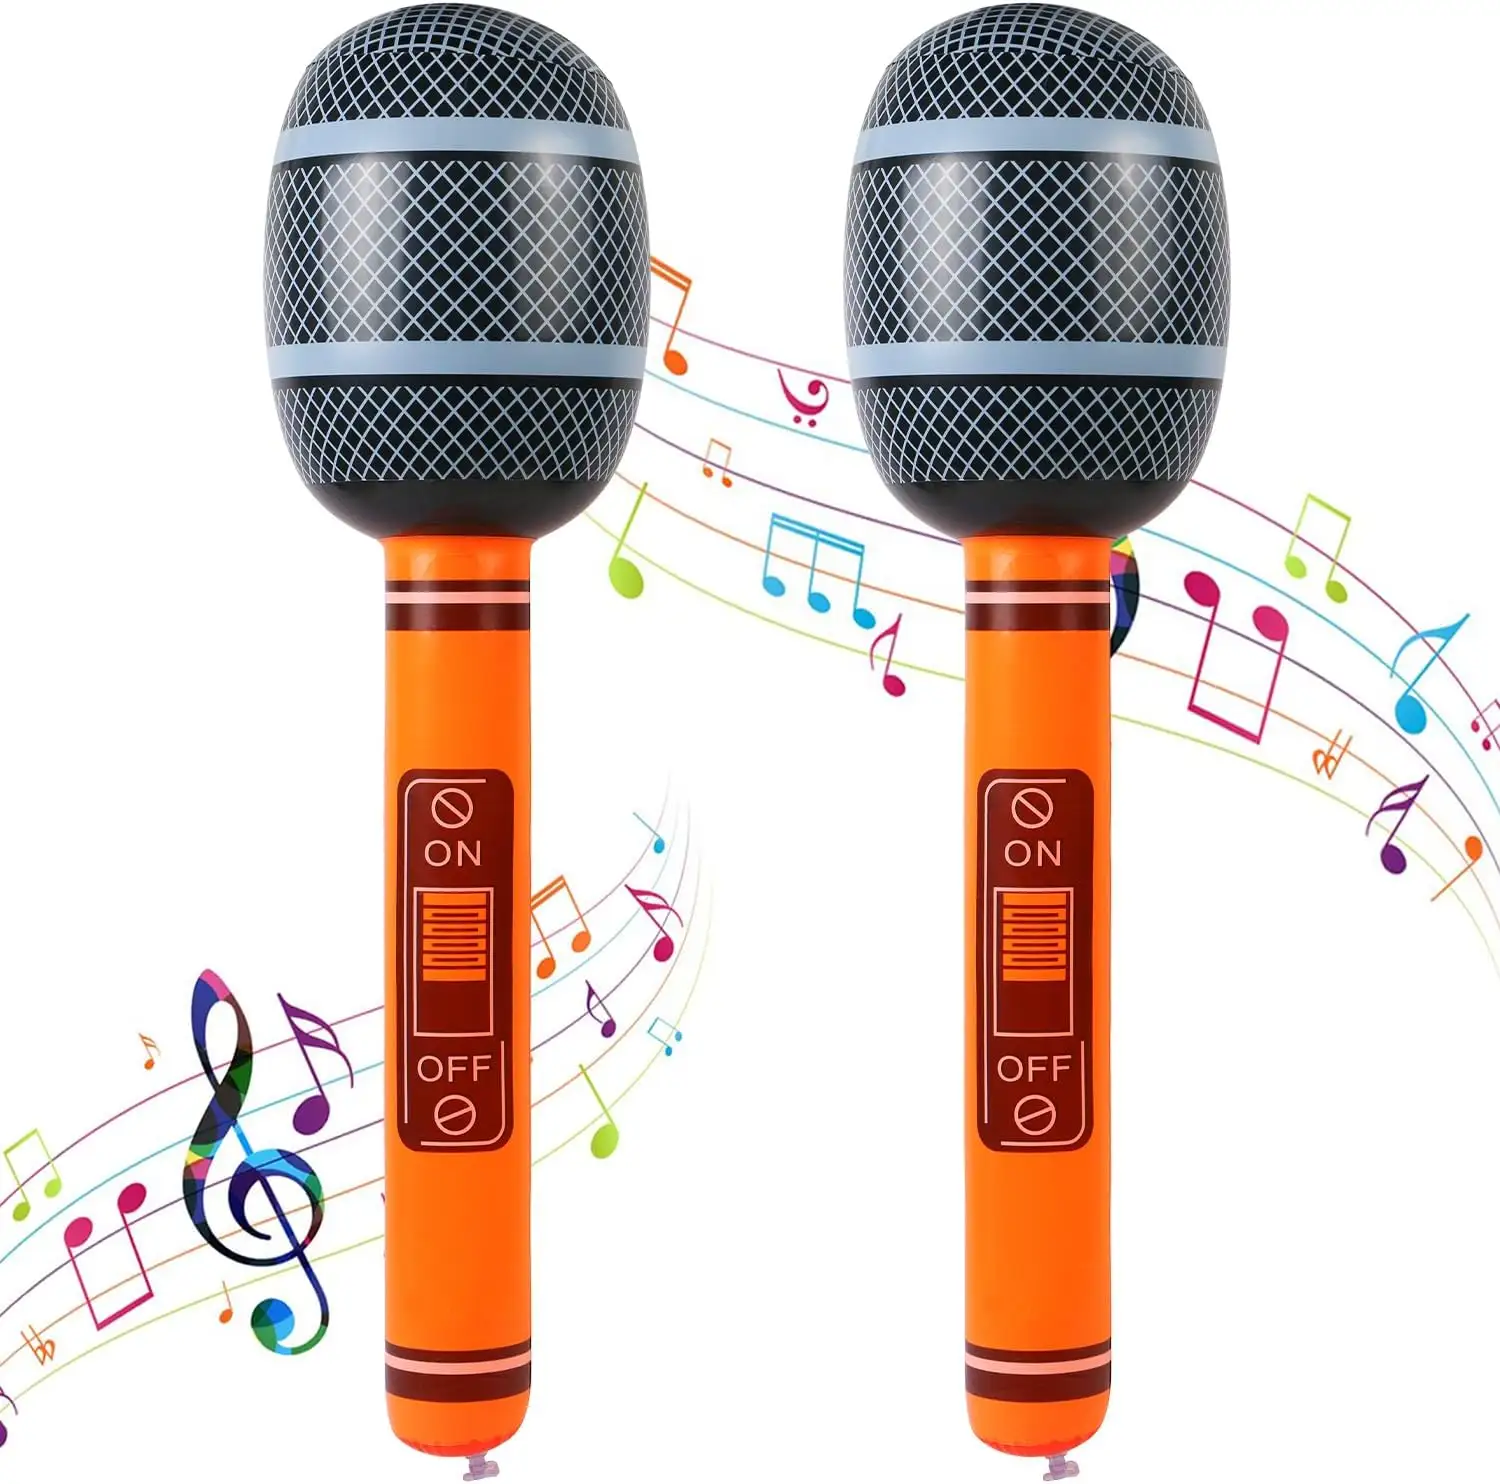 थोक कस्टम डिज़ाइन पीवीसी इन्फ्लैटेबल म्यूजिकल माइक्रोफोन खिलौने बच्चों की पार्टी गाने गाते हुए बच्चों के लिए इन्फ्लैटेबल माइक्रोफोन